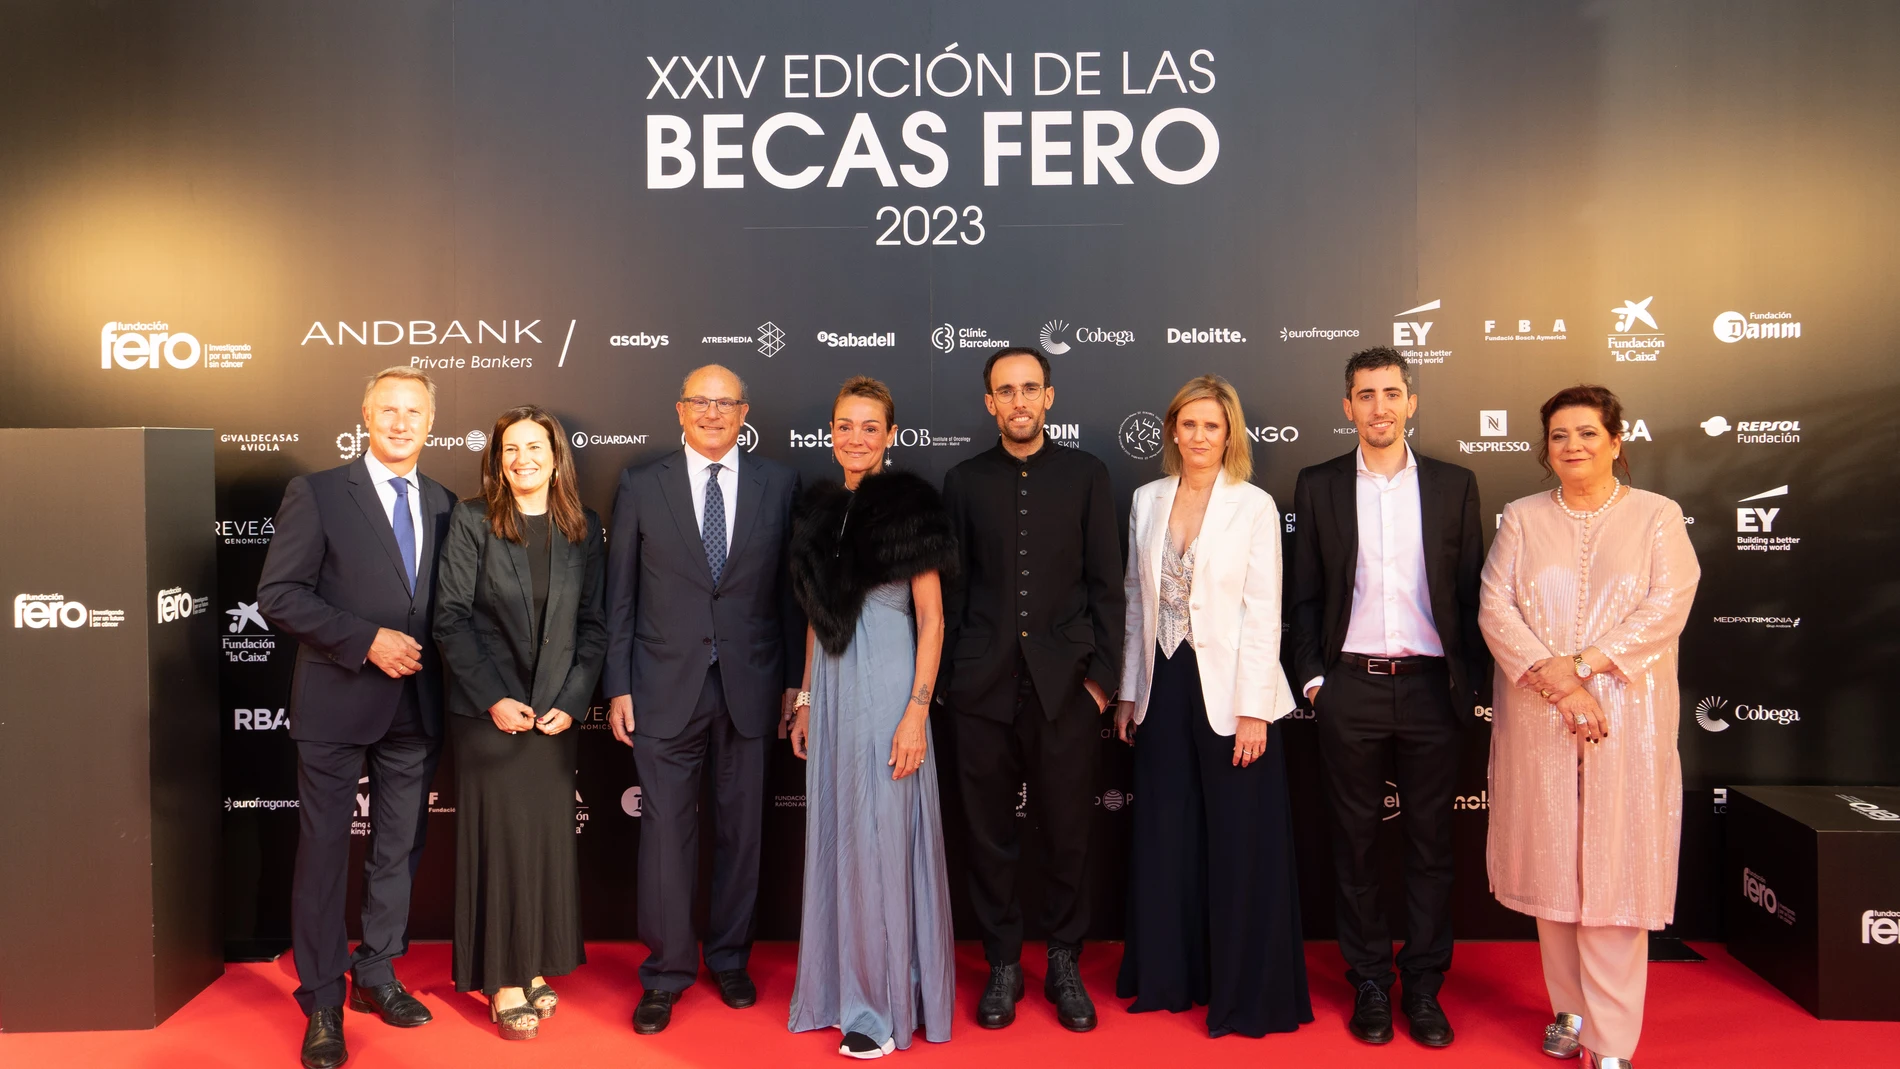 Los galardonados y patrocinadores de la XXIV edición de las Becas FERO junto a Sol Daurella y Silvia Garriga, presidenta y vicepresidenta de la Fundación FERO